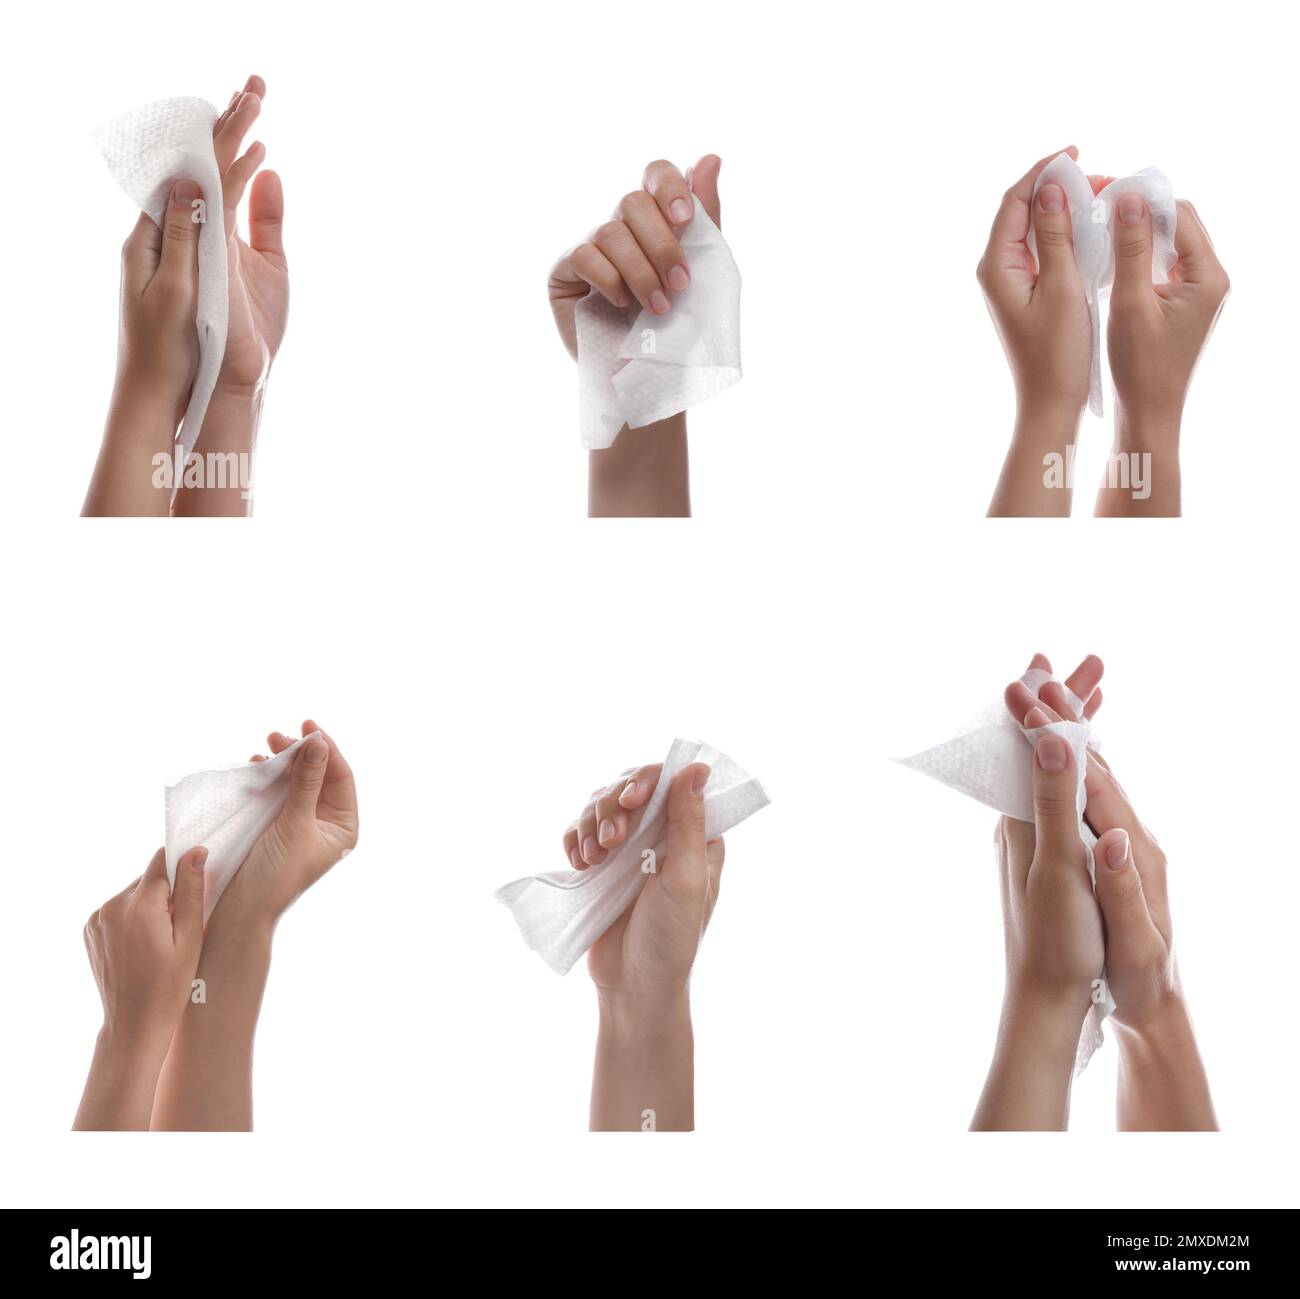 Se laver les mains avec des lingettes Banque d'images détourées - Alamy